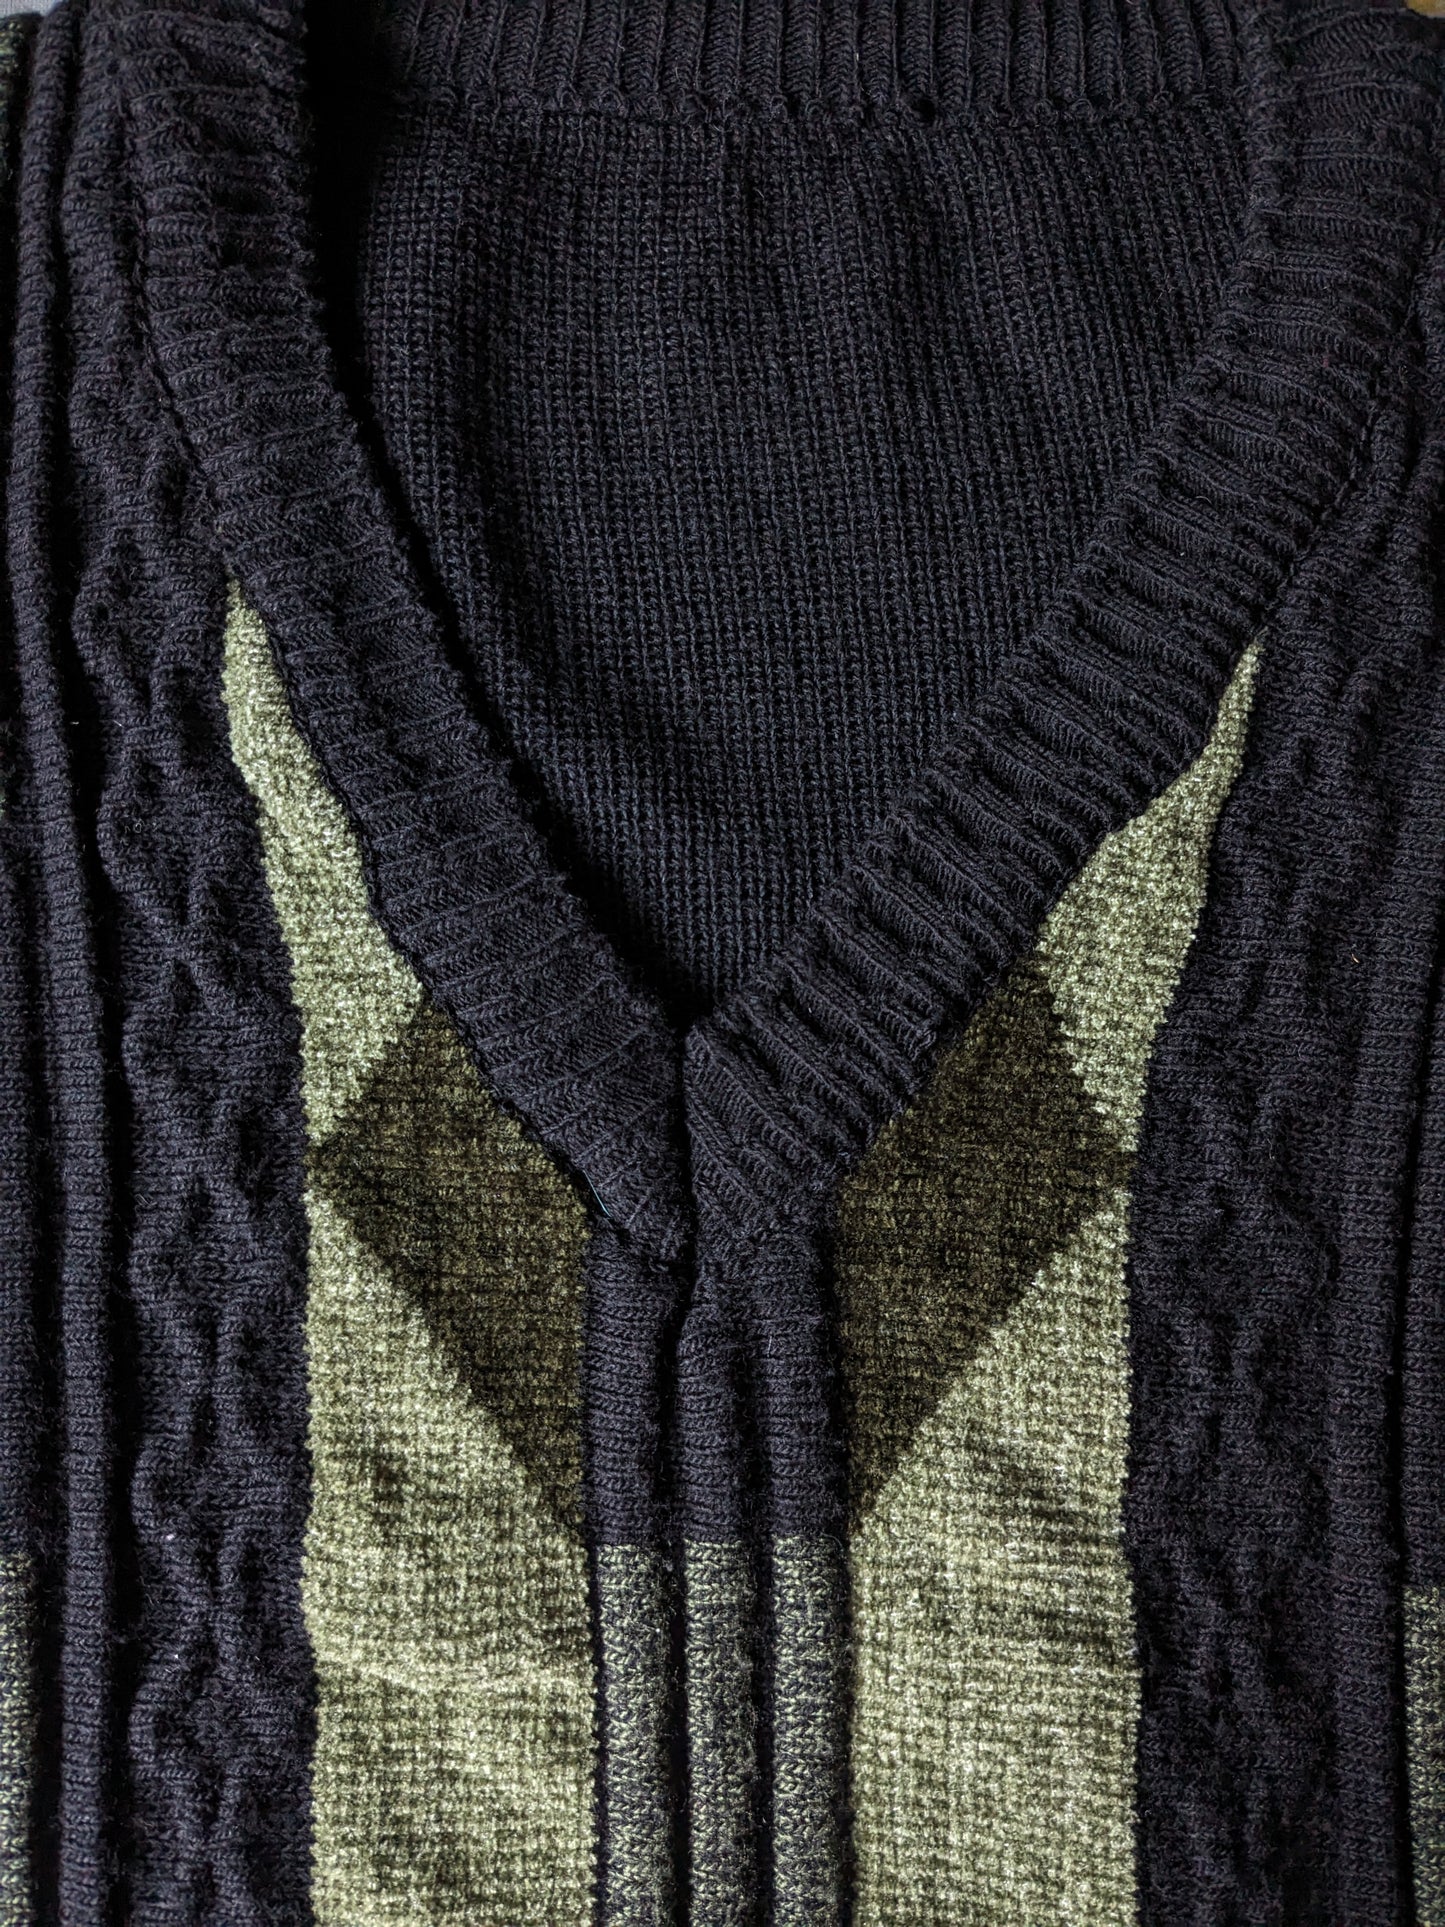 Suéter de lana vintage con cuello en V. Color verde negro. Talla L.